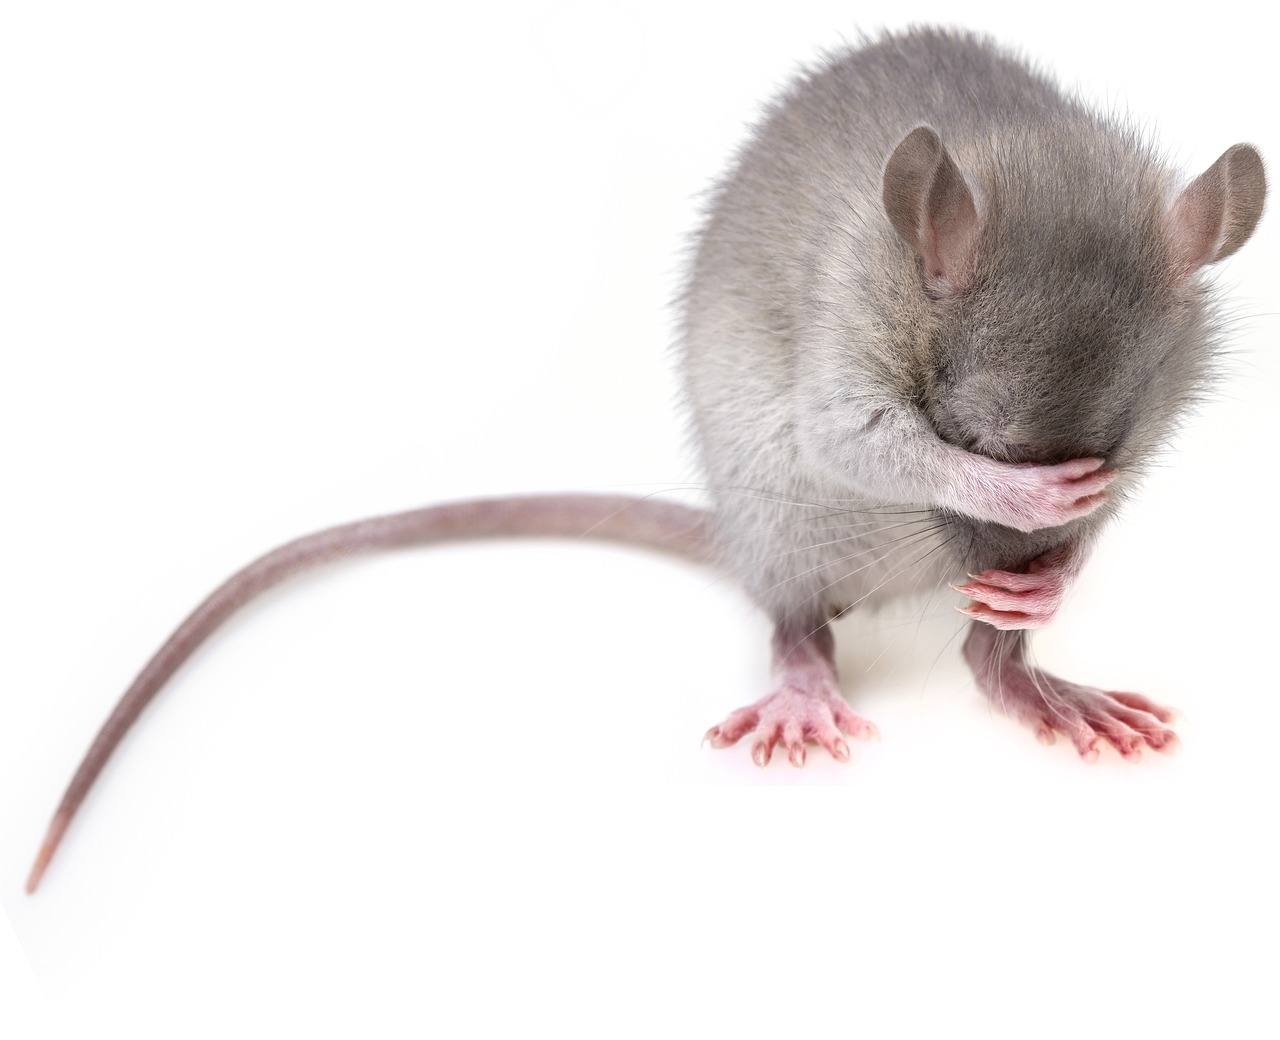 ¿Qué es bueno para eliminar ratas en casa?